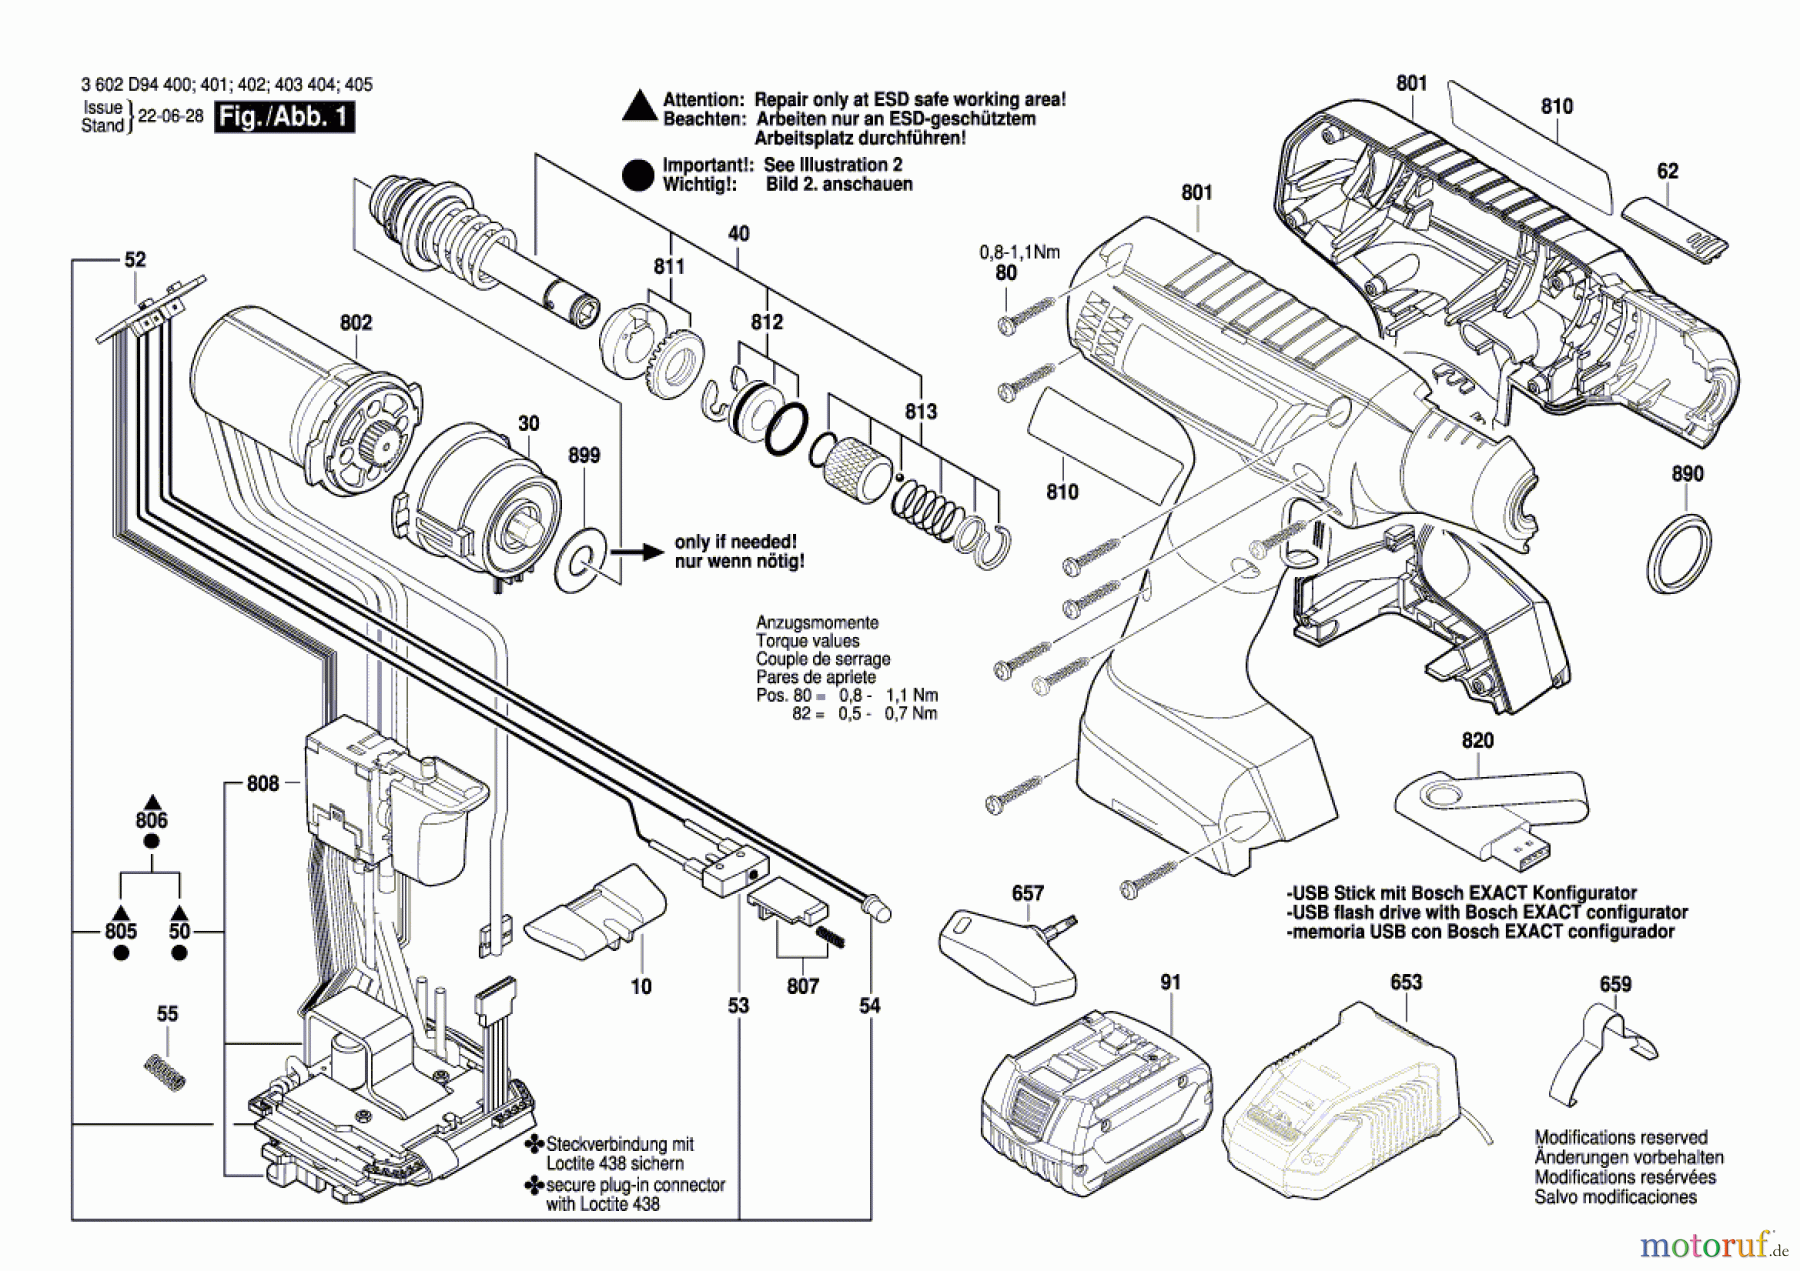  Bosch Akku Werkzeug Iw-Akku-Schrauber EXACT ION 8-1100 Seite 1